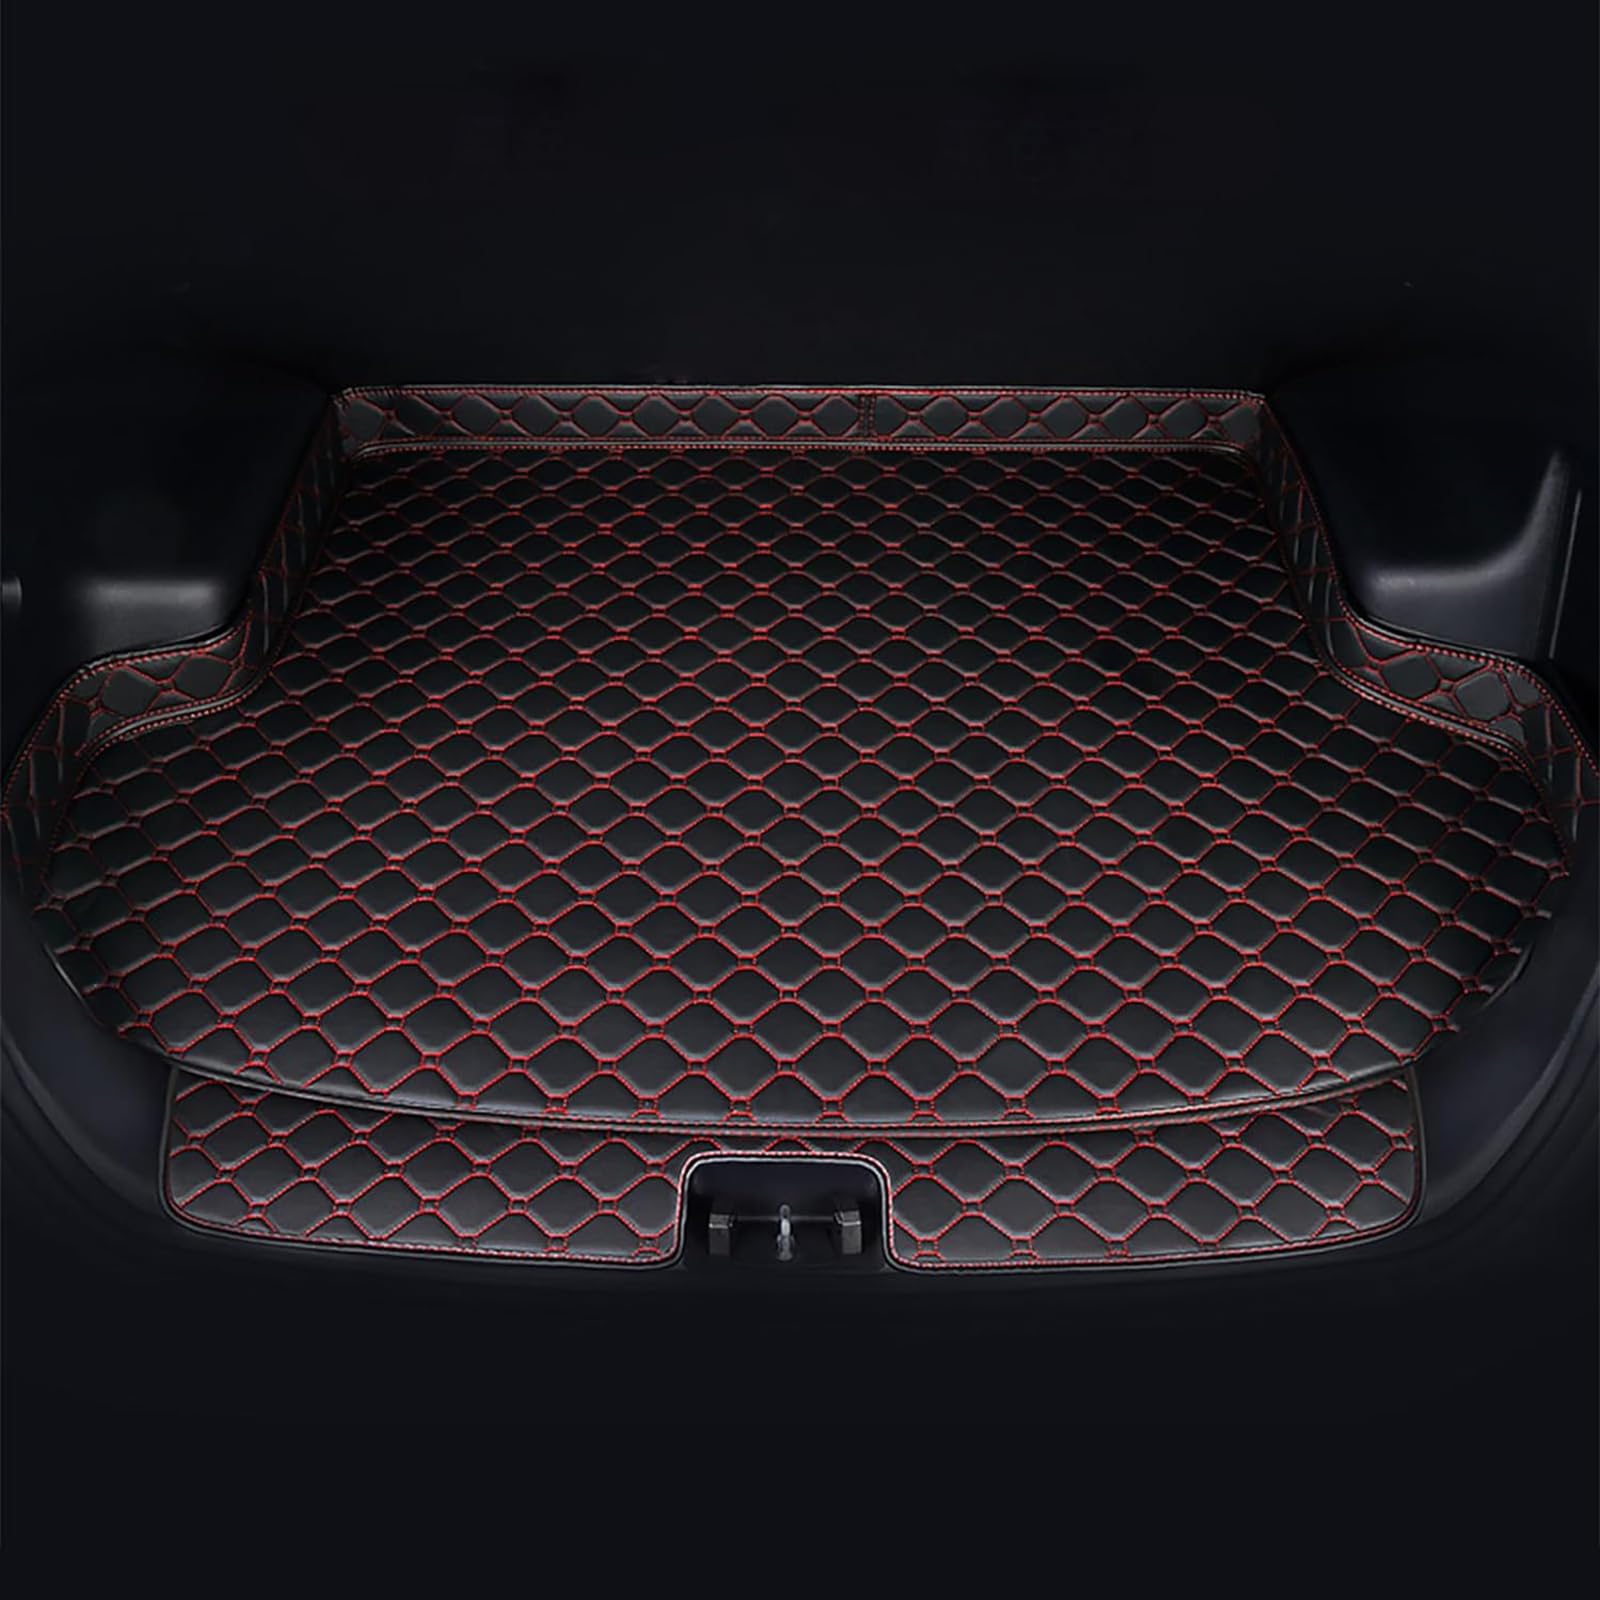 Auto Leder Kofferraummatten Für Lexus RX450H 2010-2019, Wasserdicht rutschfest Kofferraumwanne Allwetter Cargo Teppich Schutzmatte Interieur Zubehör,C/Black-Red von FNUQKREF